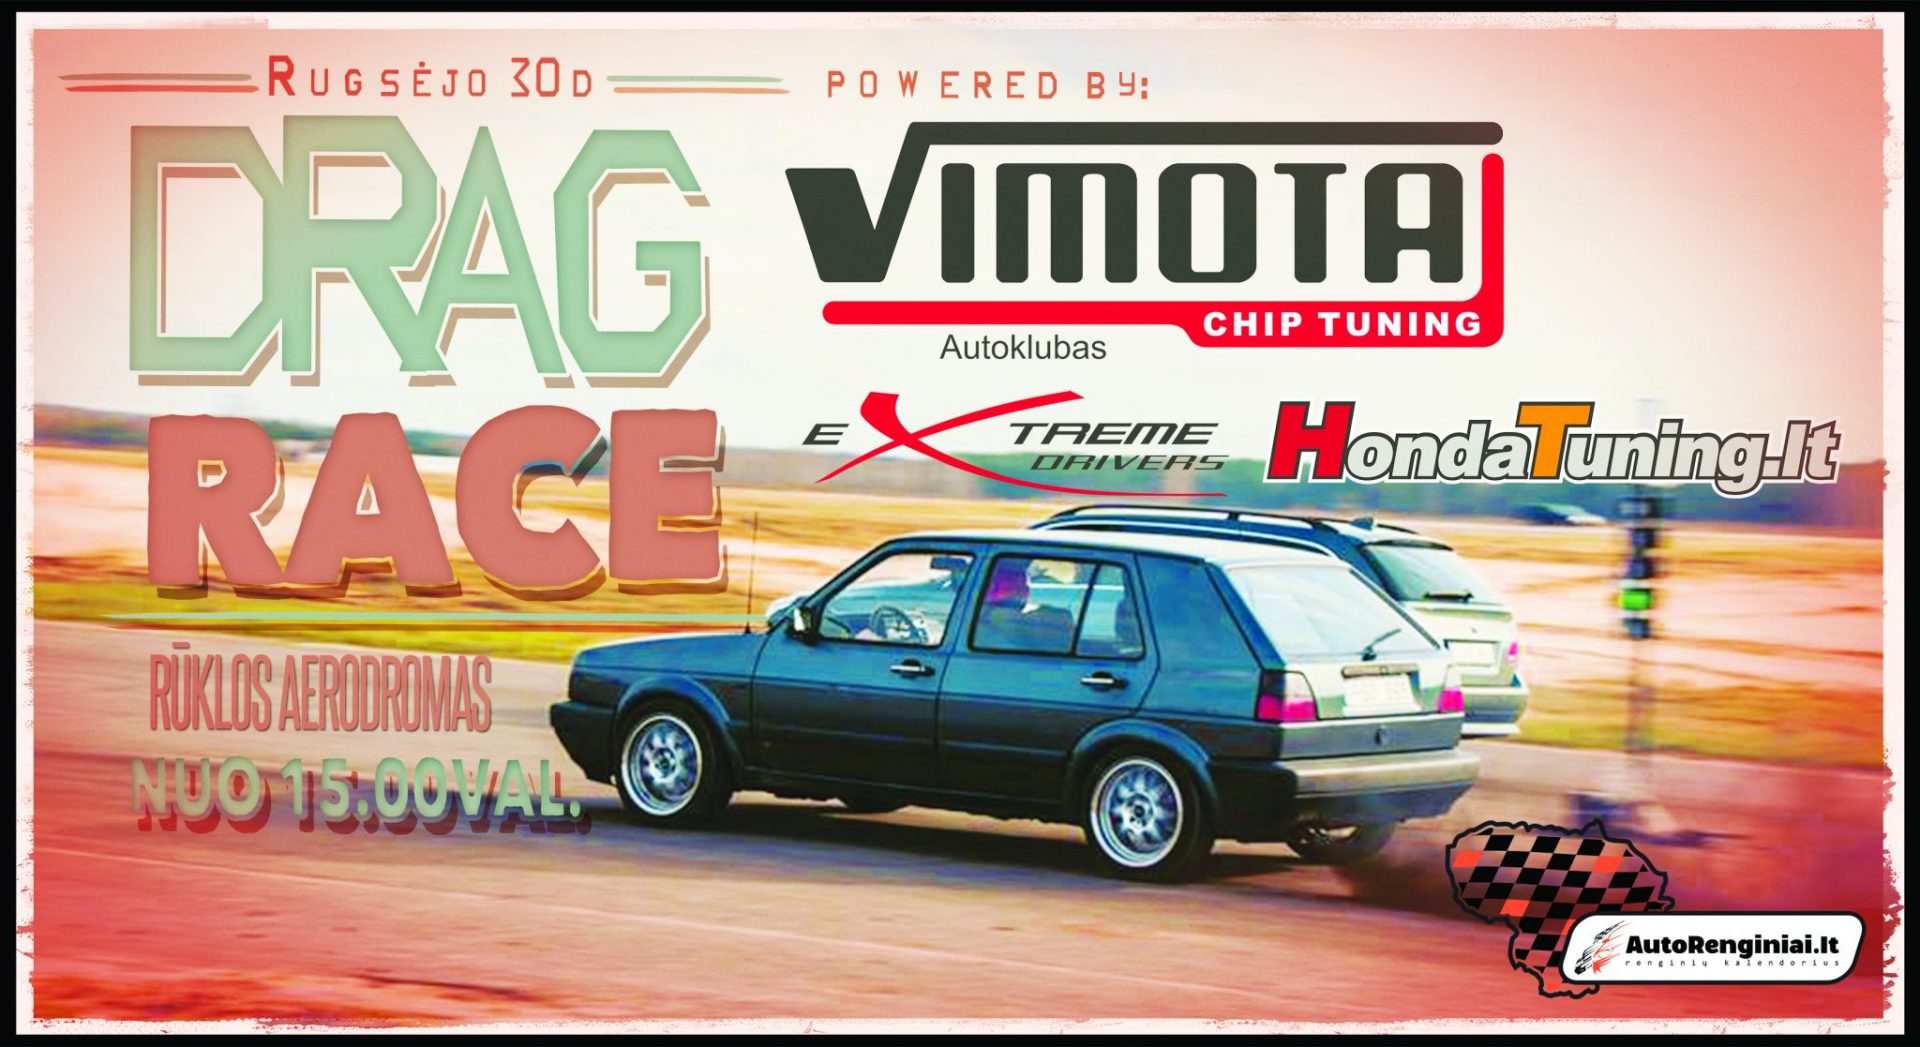 Vimota Drag Race Paskutinis 2017